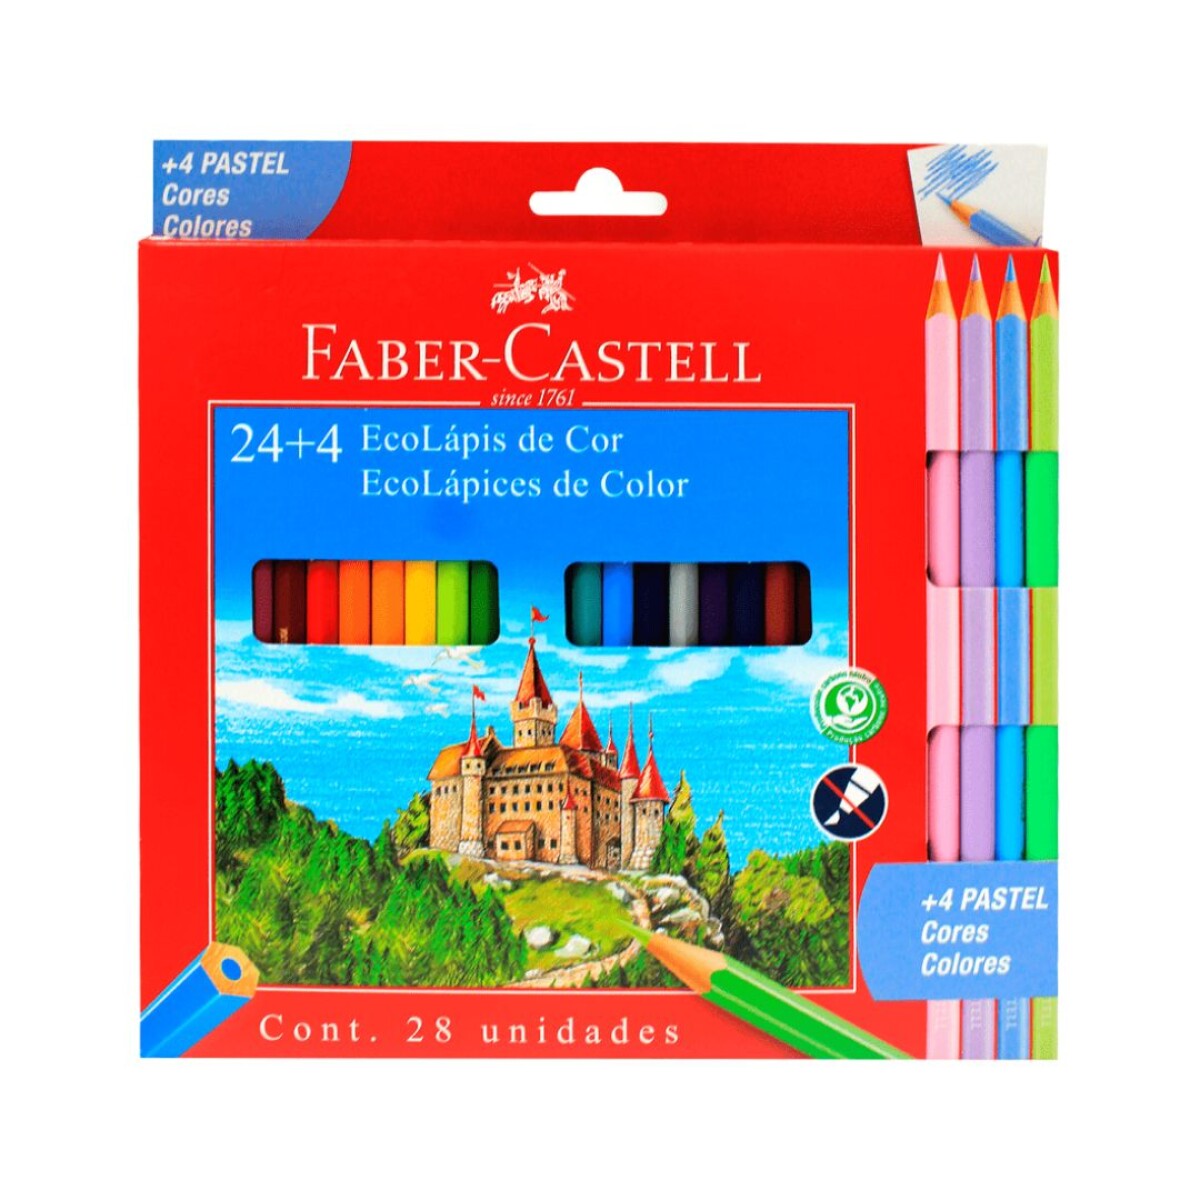 Lápices de Colores Faber Castell 24 Colores + 4 Pastel 